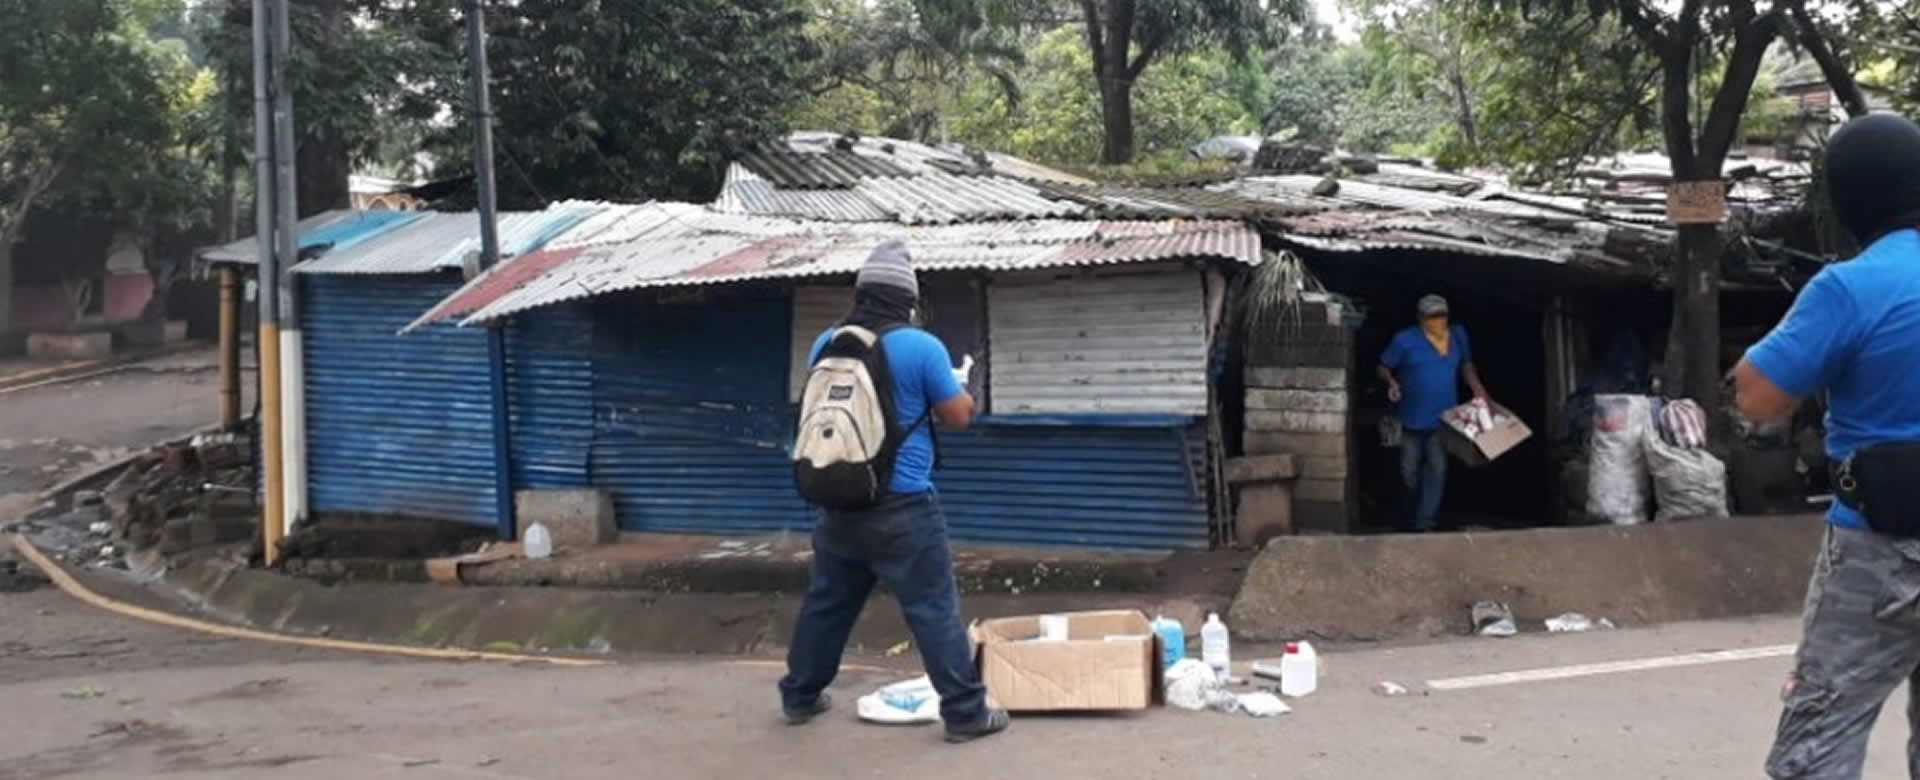 Caravana de la paz libera a familias secuestradas en Barrios Camilo Ortega y Monimbó